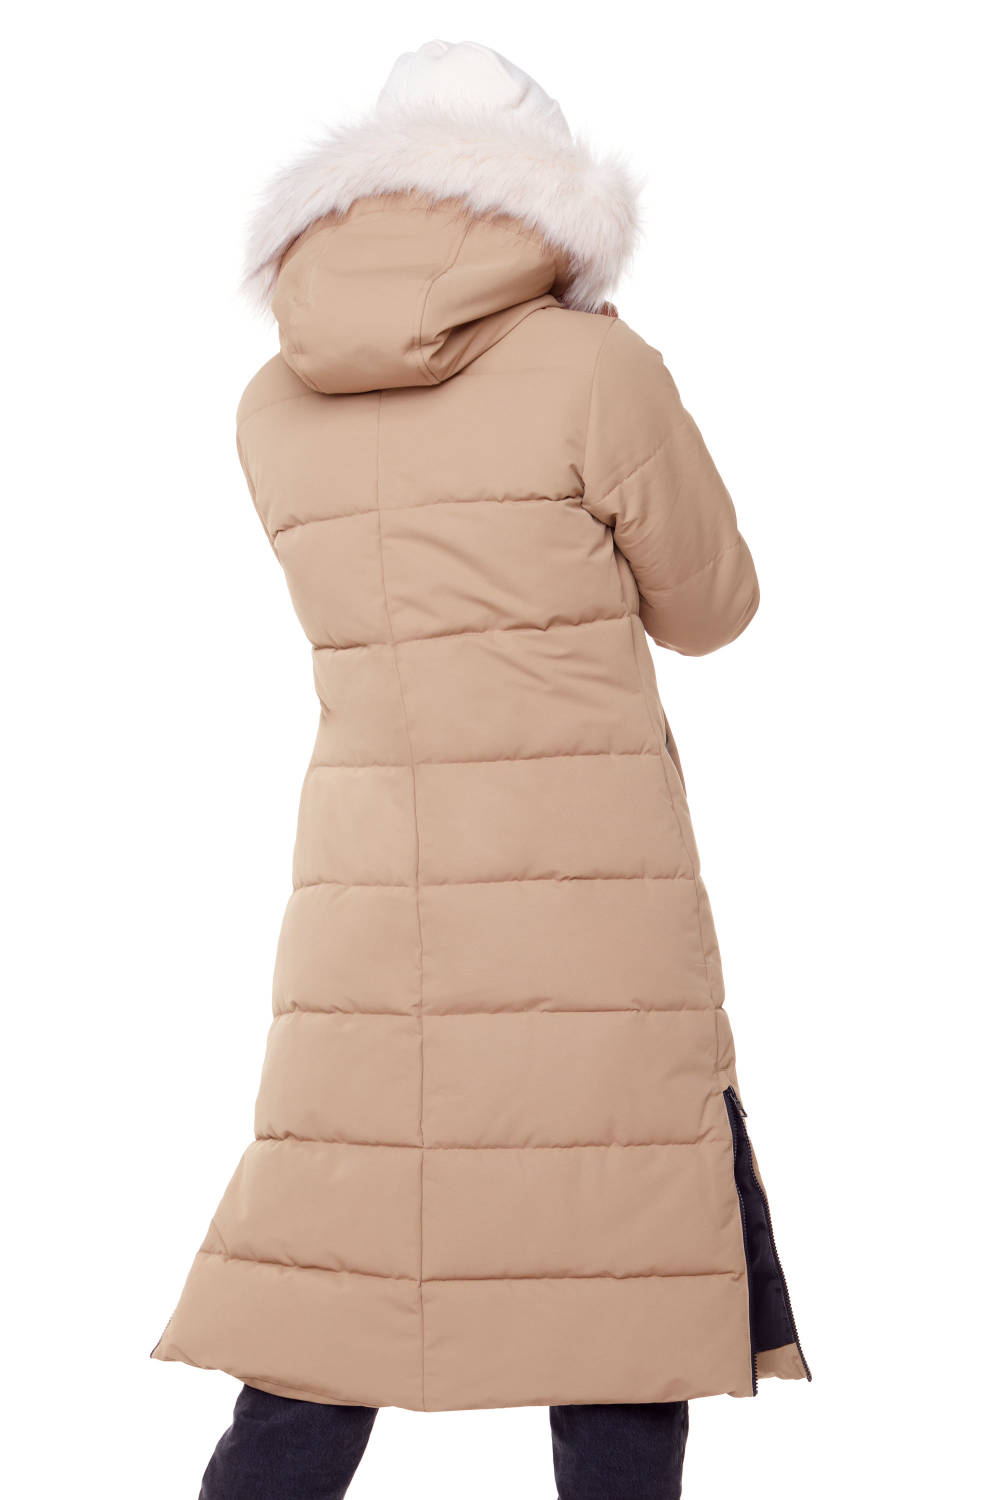 Alpine North Parka longue femme recyclée duvet végan (veste résistante à l’eau, coupe-vent, isolante à capuche)